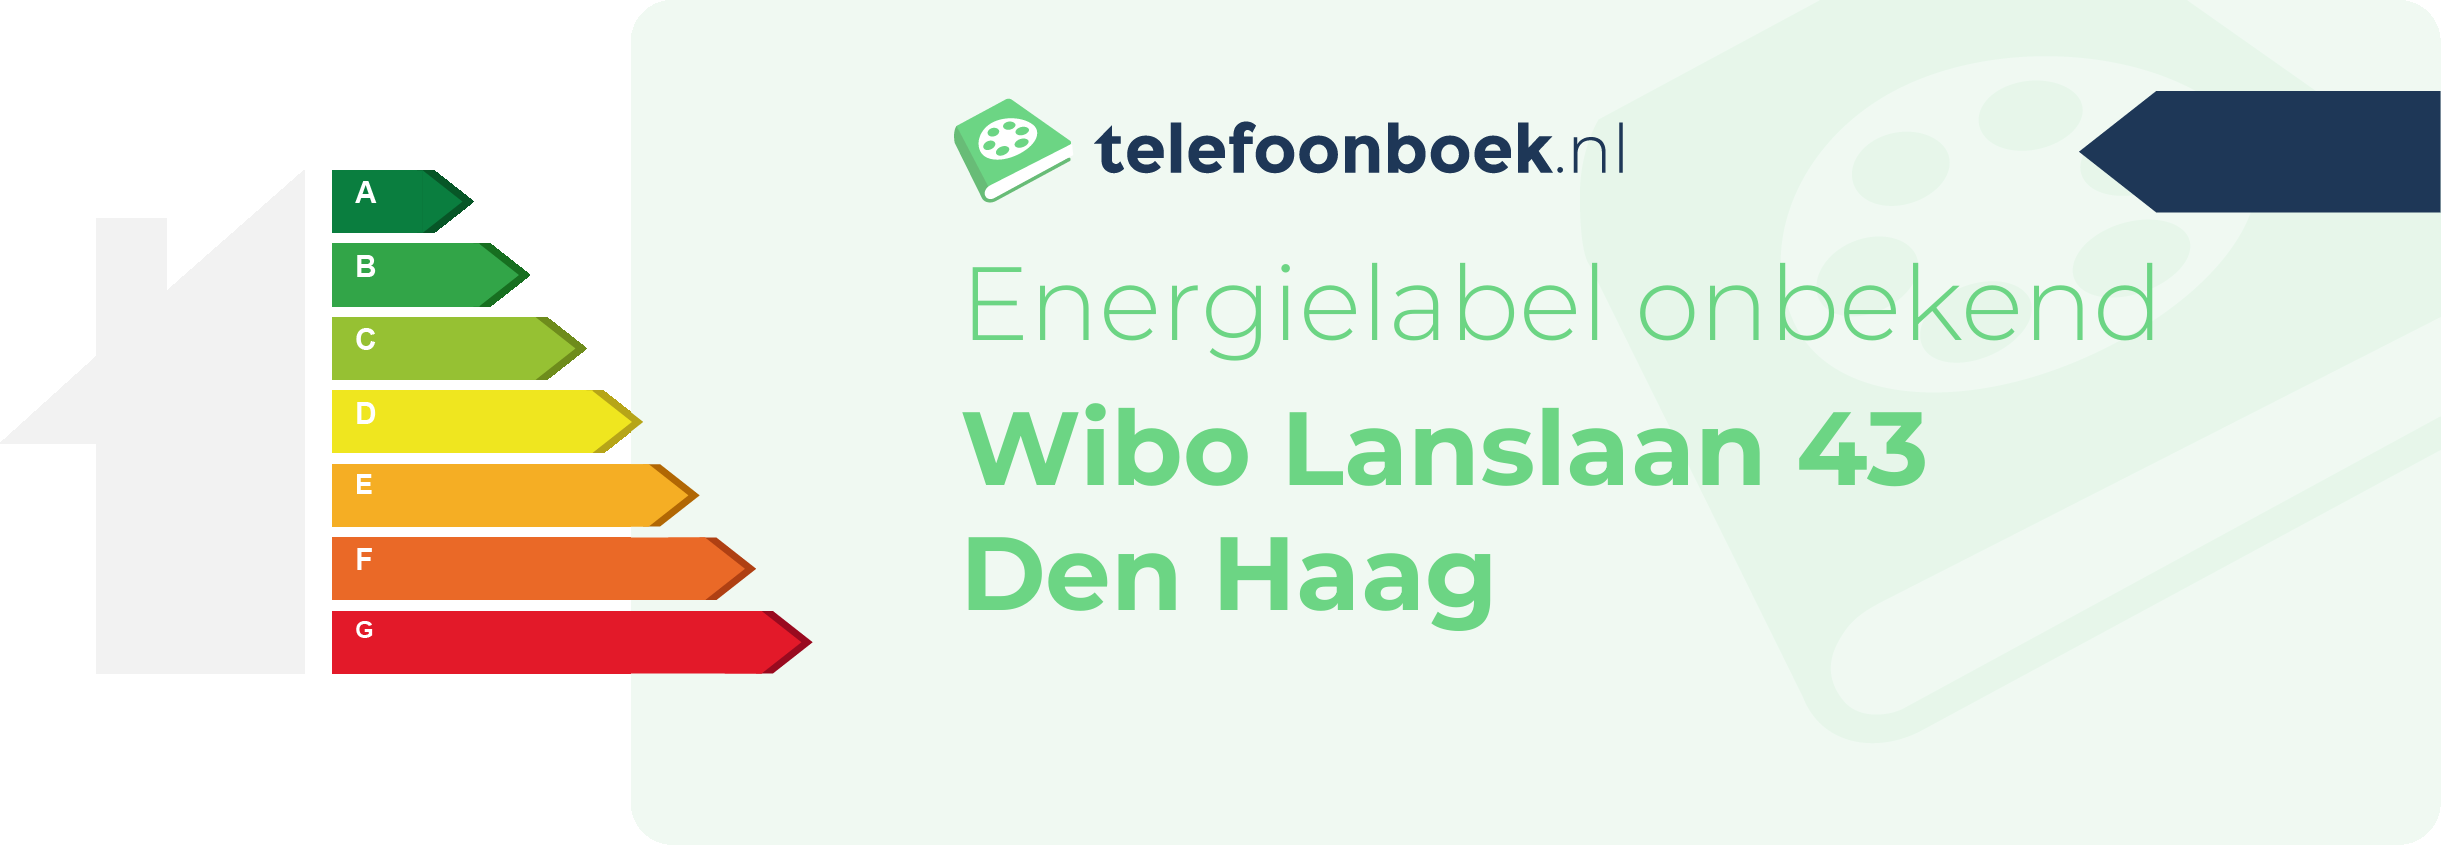 Energielabel Wibo Lanslaan 43 Den Haag